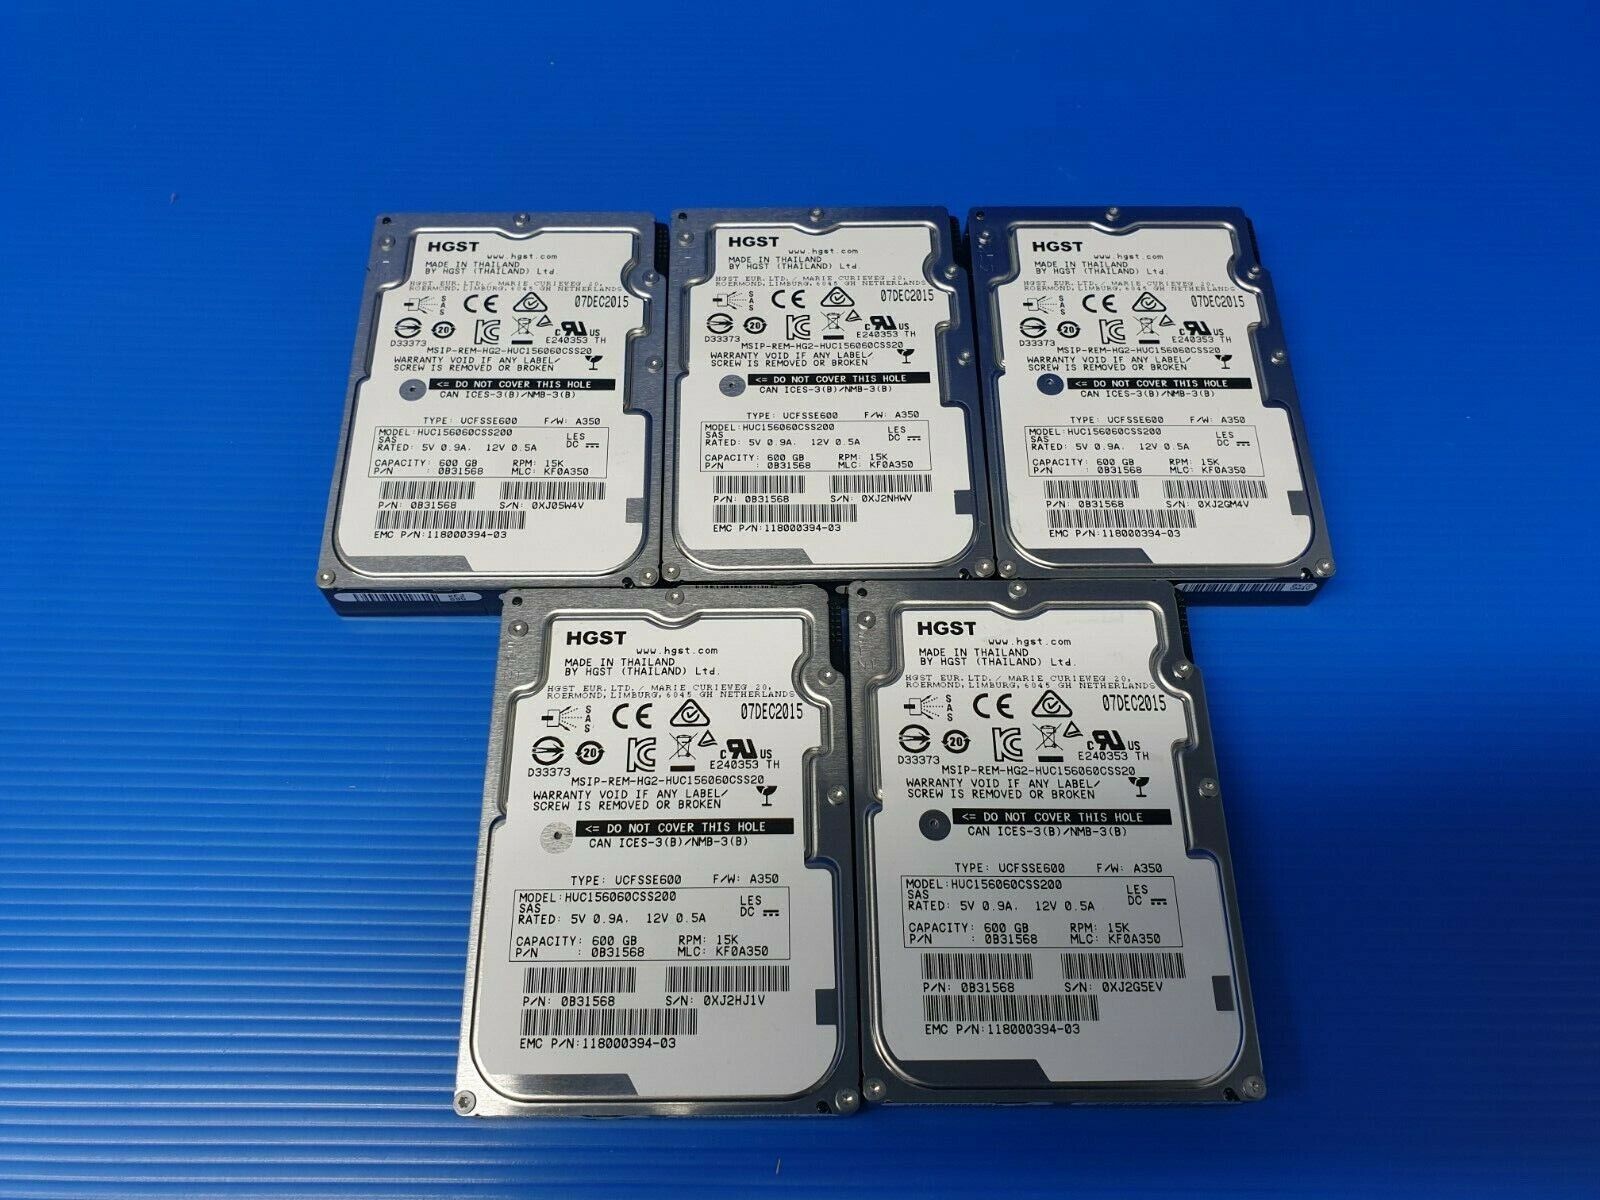 EMC 118000394-03 HGST 600GB 15K SAS 12GB/s 2.5